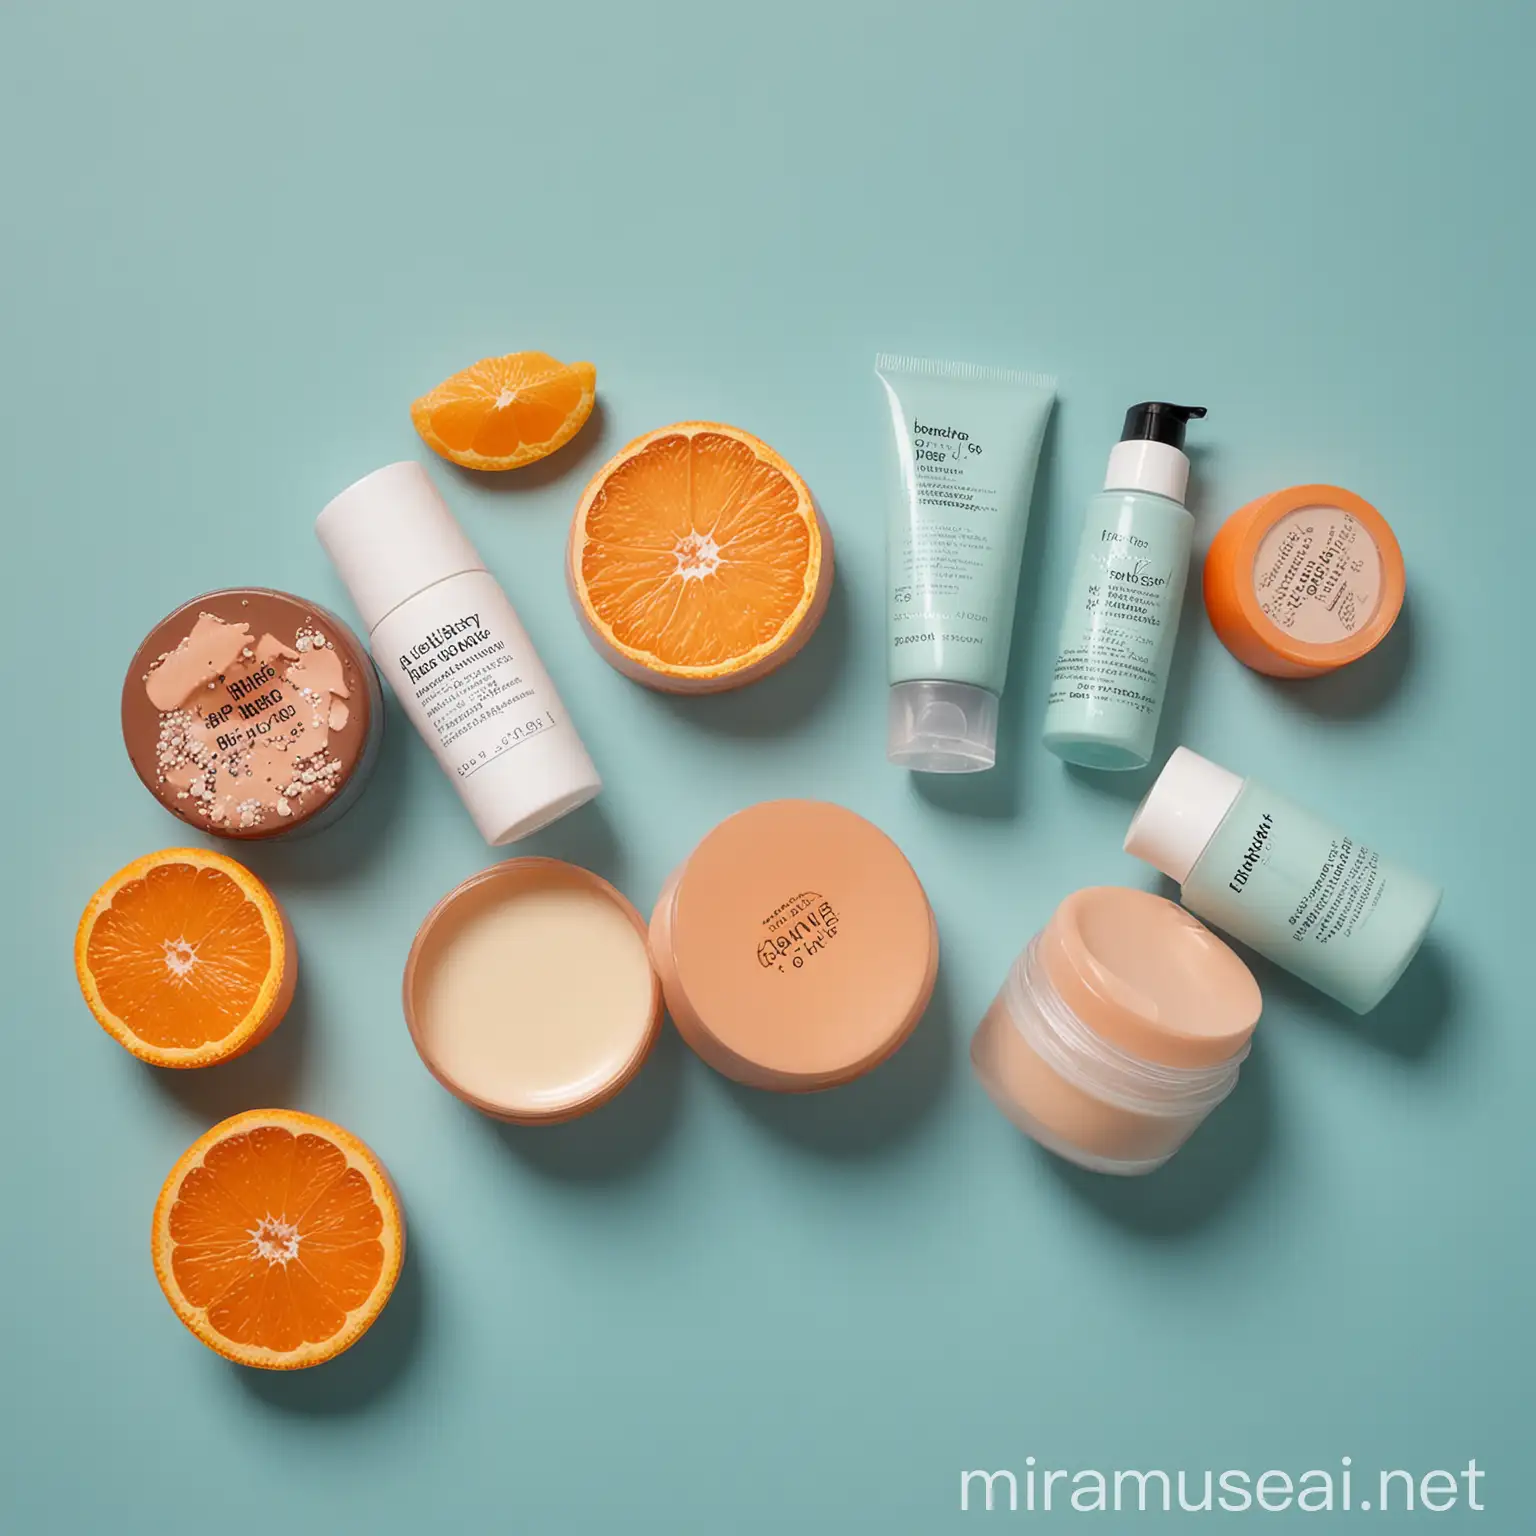 foto realista que muetsre productos de freshly cosmetics en un fondo azul claro y otra en fondo naranja